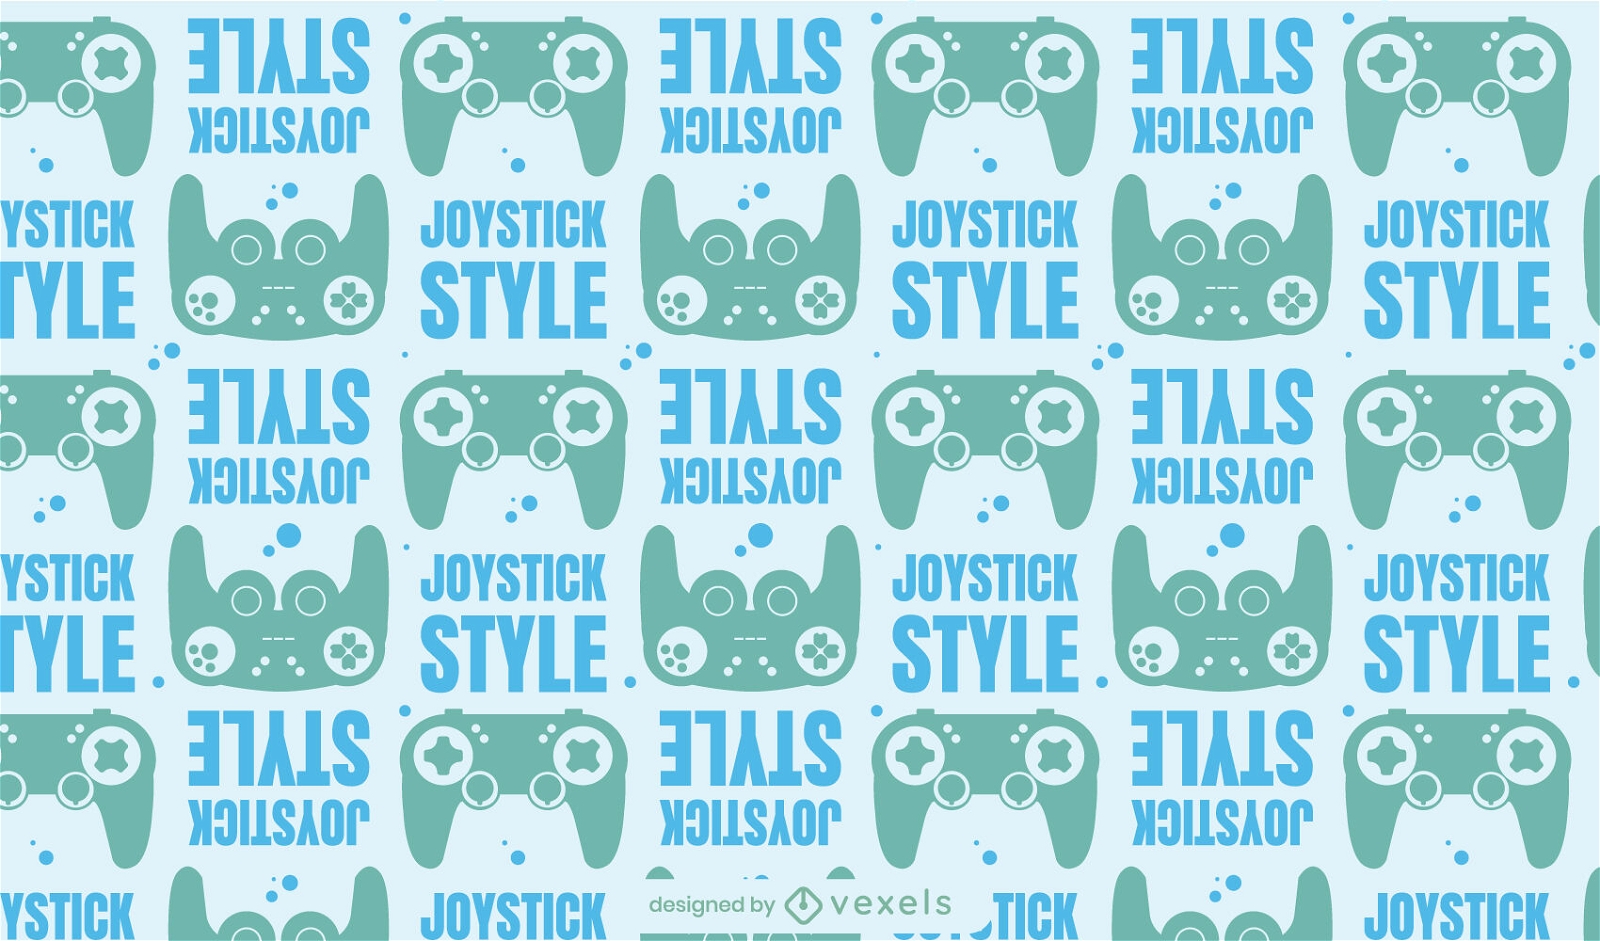 Joystick style pattern design